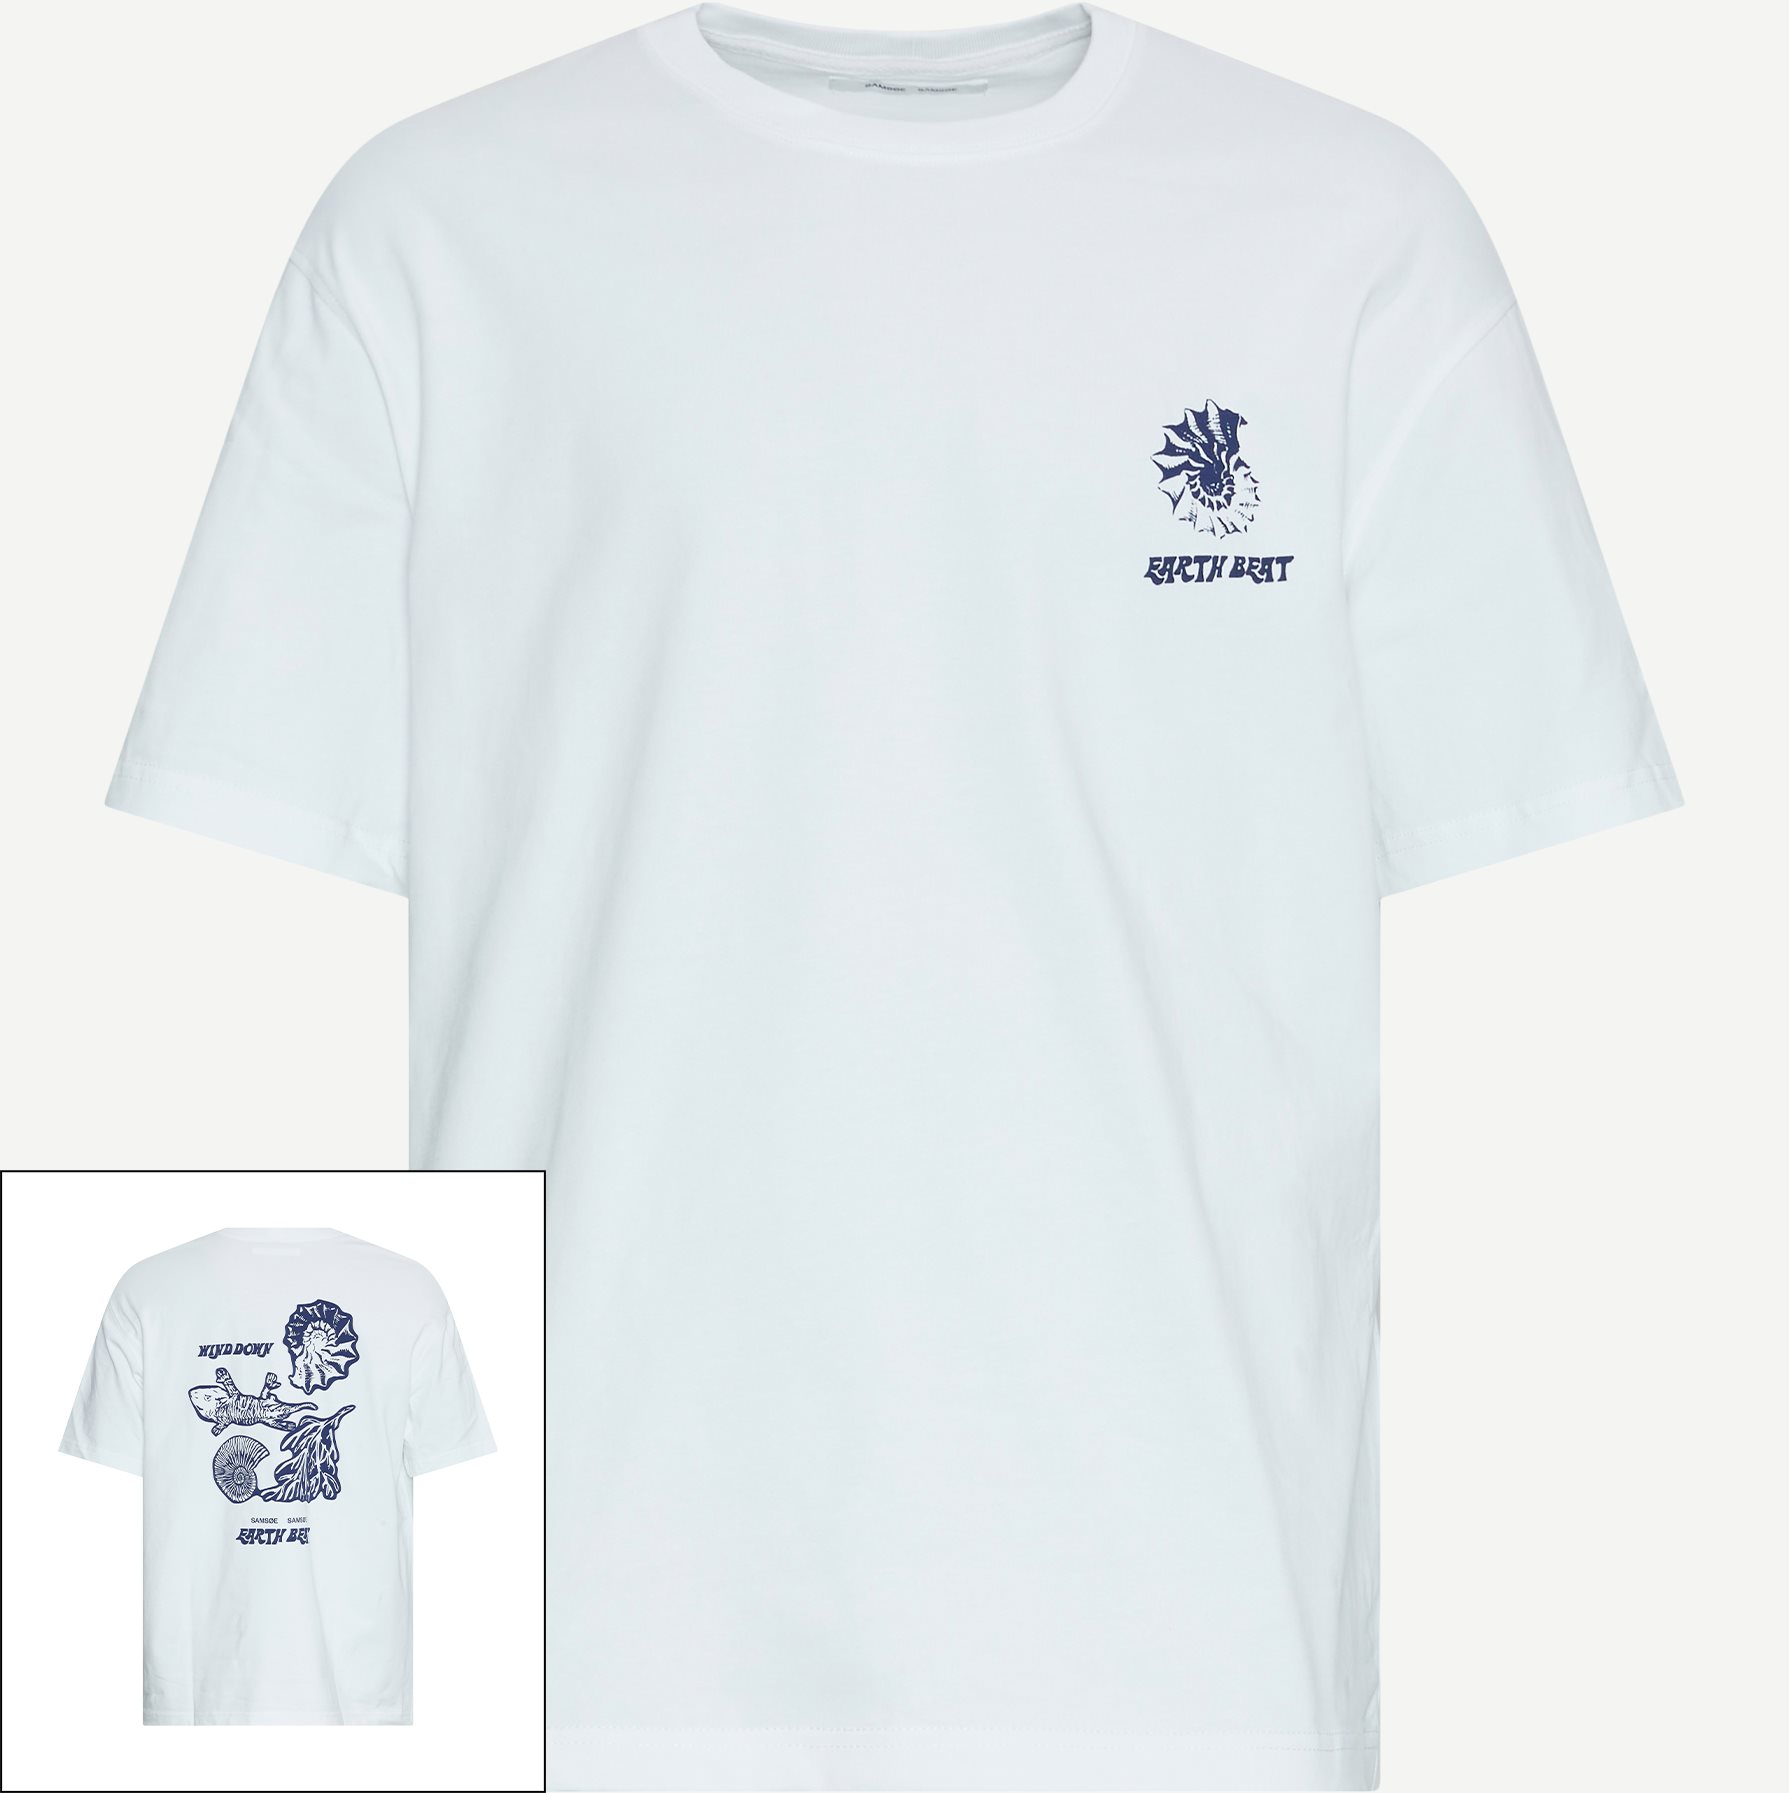 Samsøe Samsøe T-shirts SAWIND UNI FOSSIL T-SHIRT 11725 White